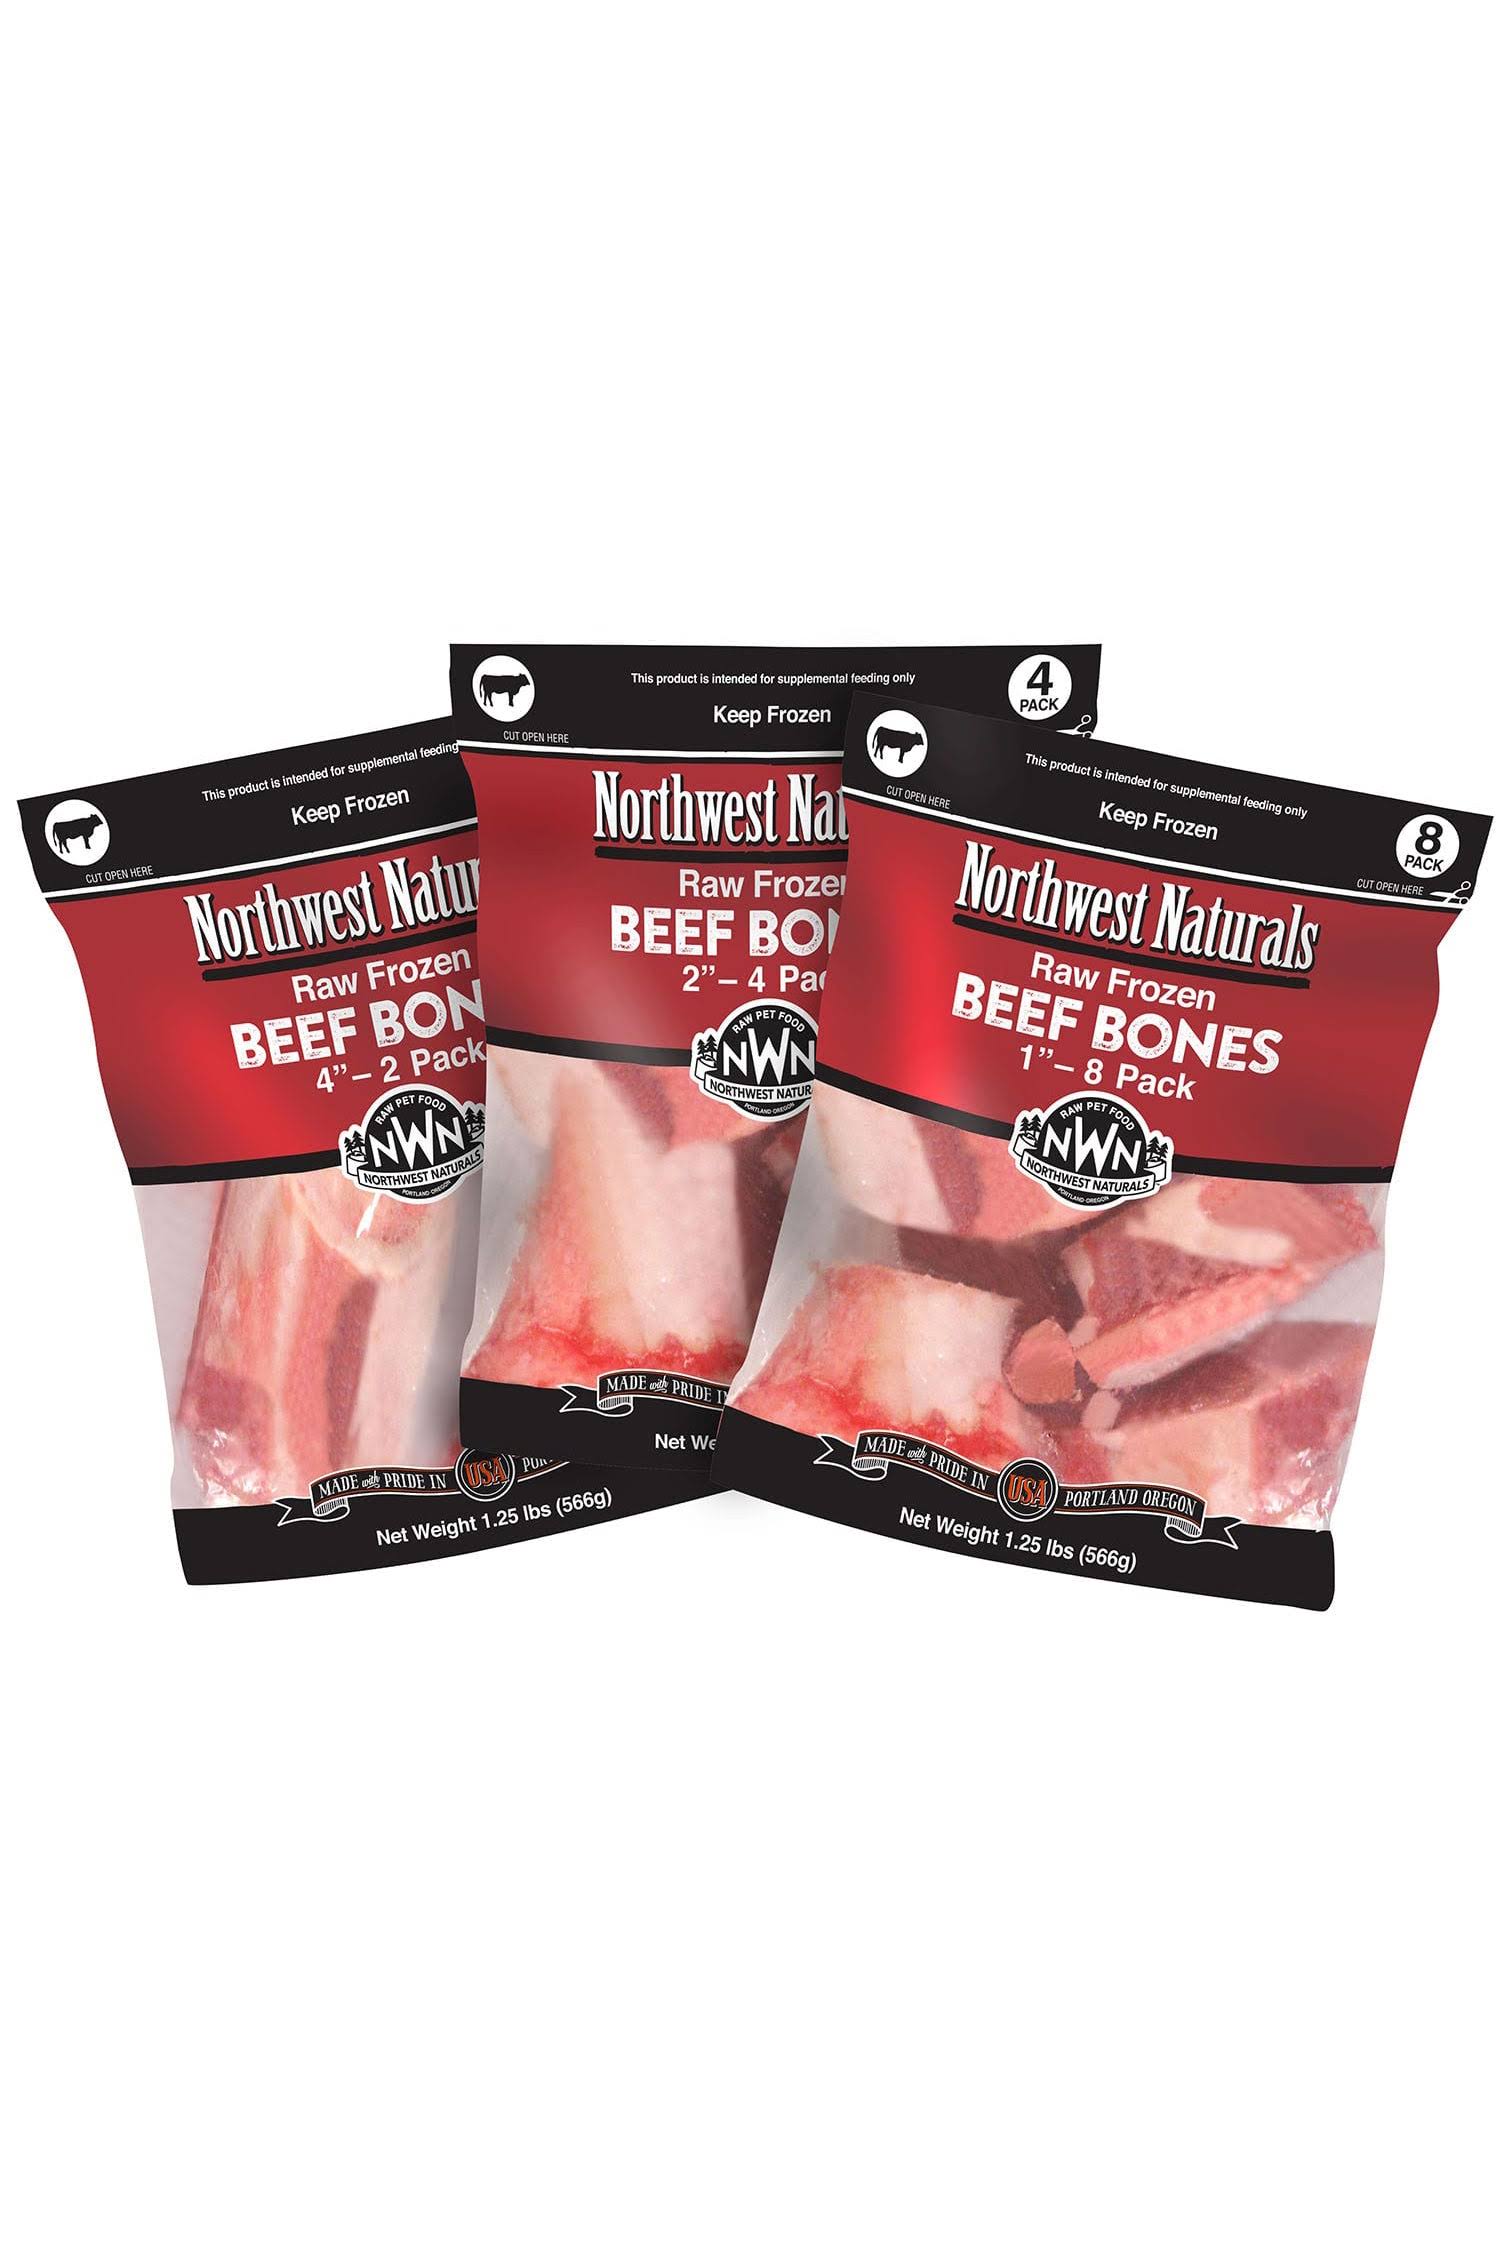 Northwest Naturals Frozen Beef Bones 1in 8 pack